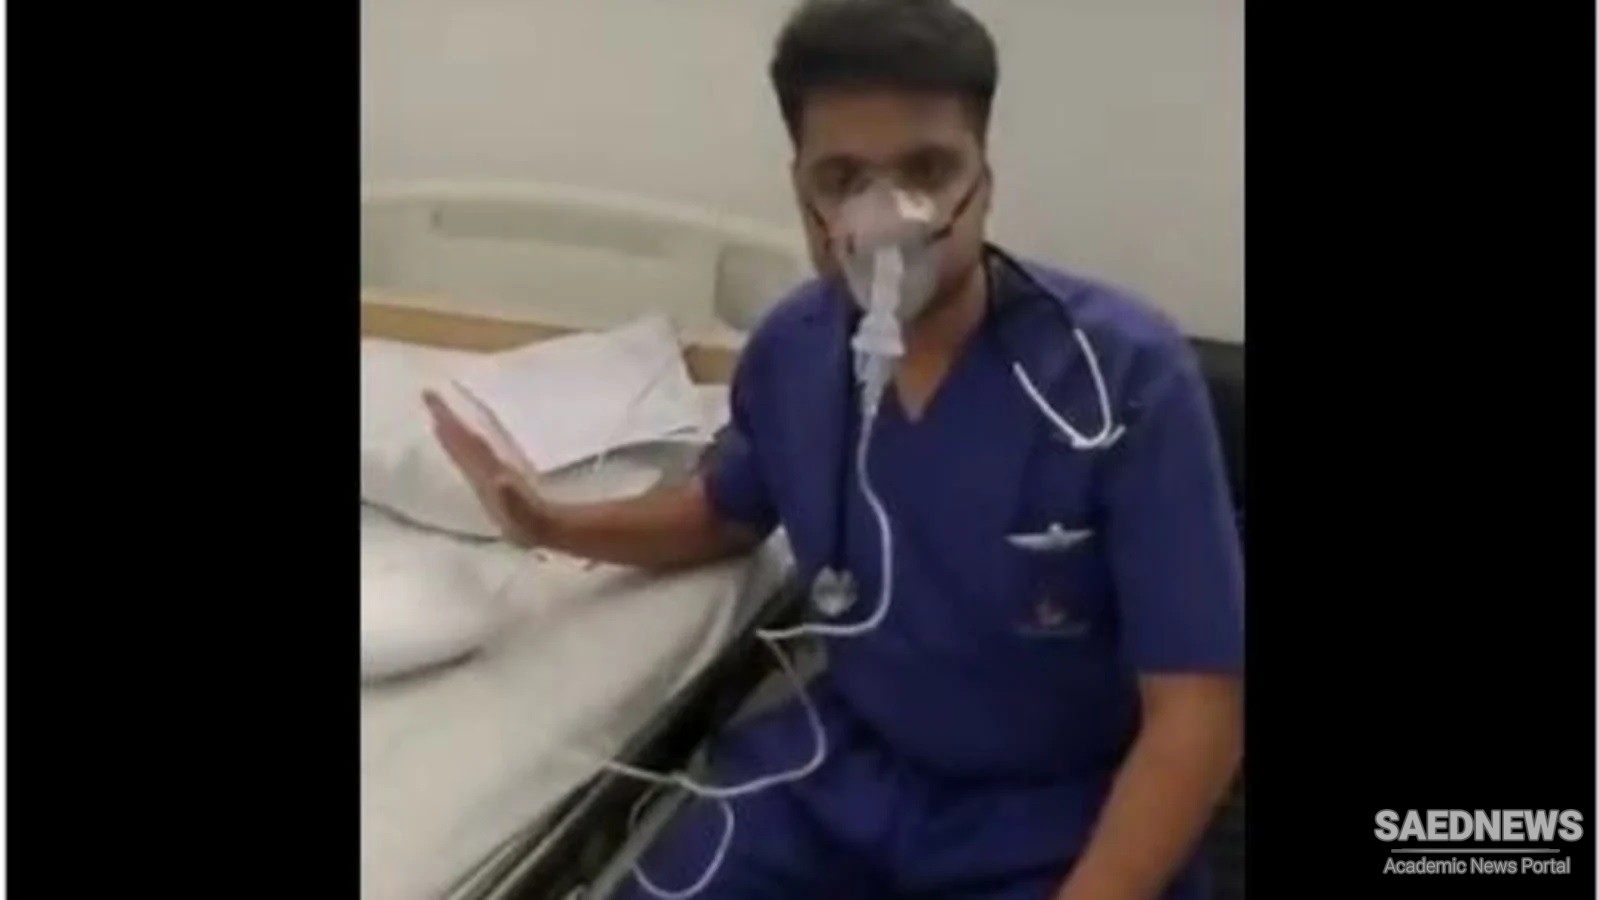 ऑक्सीजन सिलेंडर के आधार पर नेबुलाइज़र का उपयोग करने पर वायरल वीडियो, विशेषज्ञों को चेतावनी; डॉक्टर ने माफ़ी मांगी